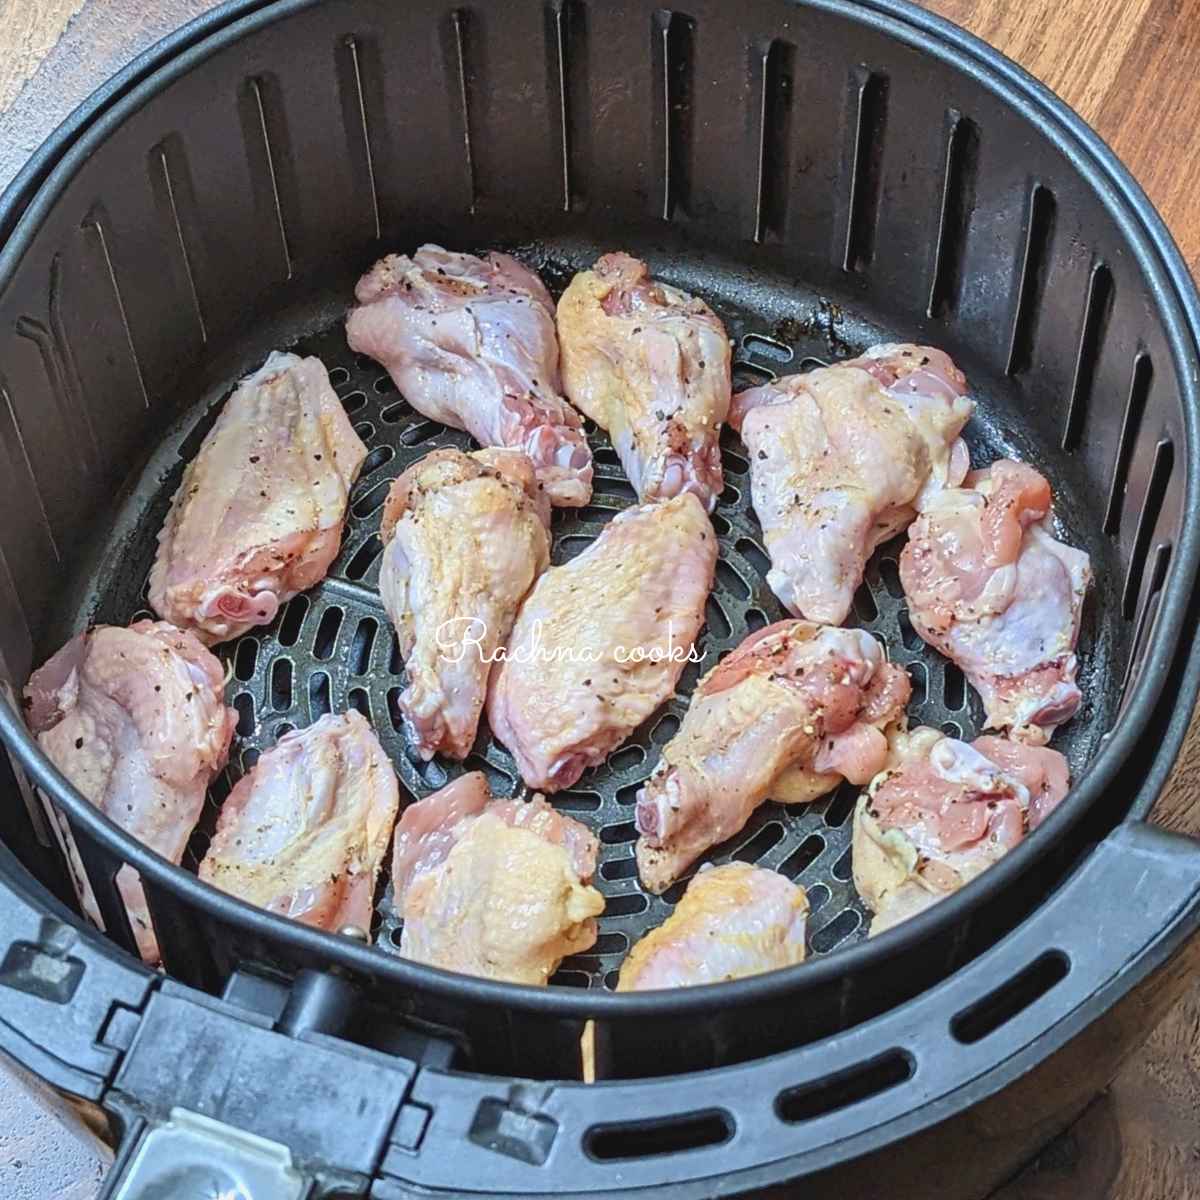 Seasoned chicken wings in air fryer basket